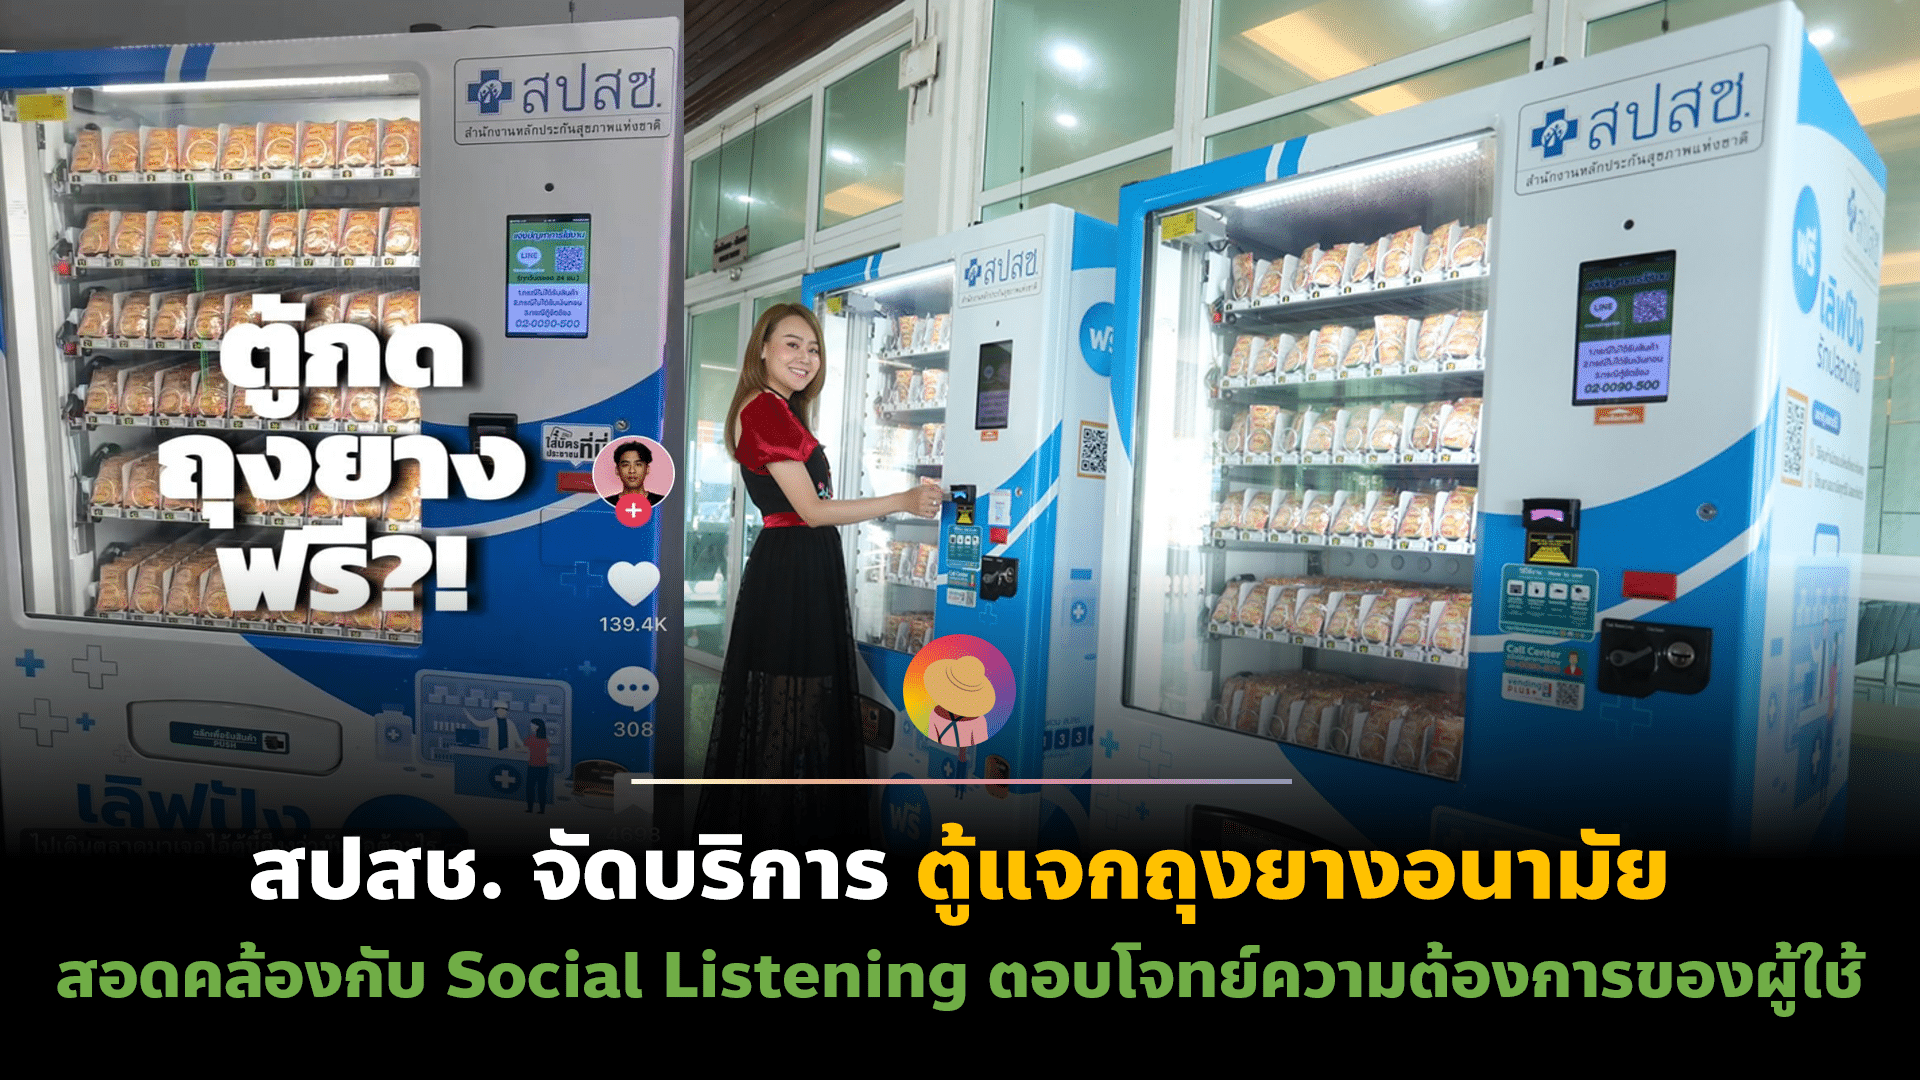 สปสช. จัดตู้แจกถุงยางอนามัย ตอบโจทย์ความต้องการของคนไทย จาก Social Listening